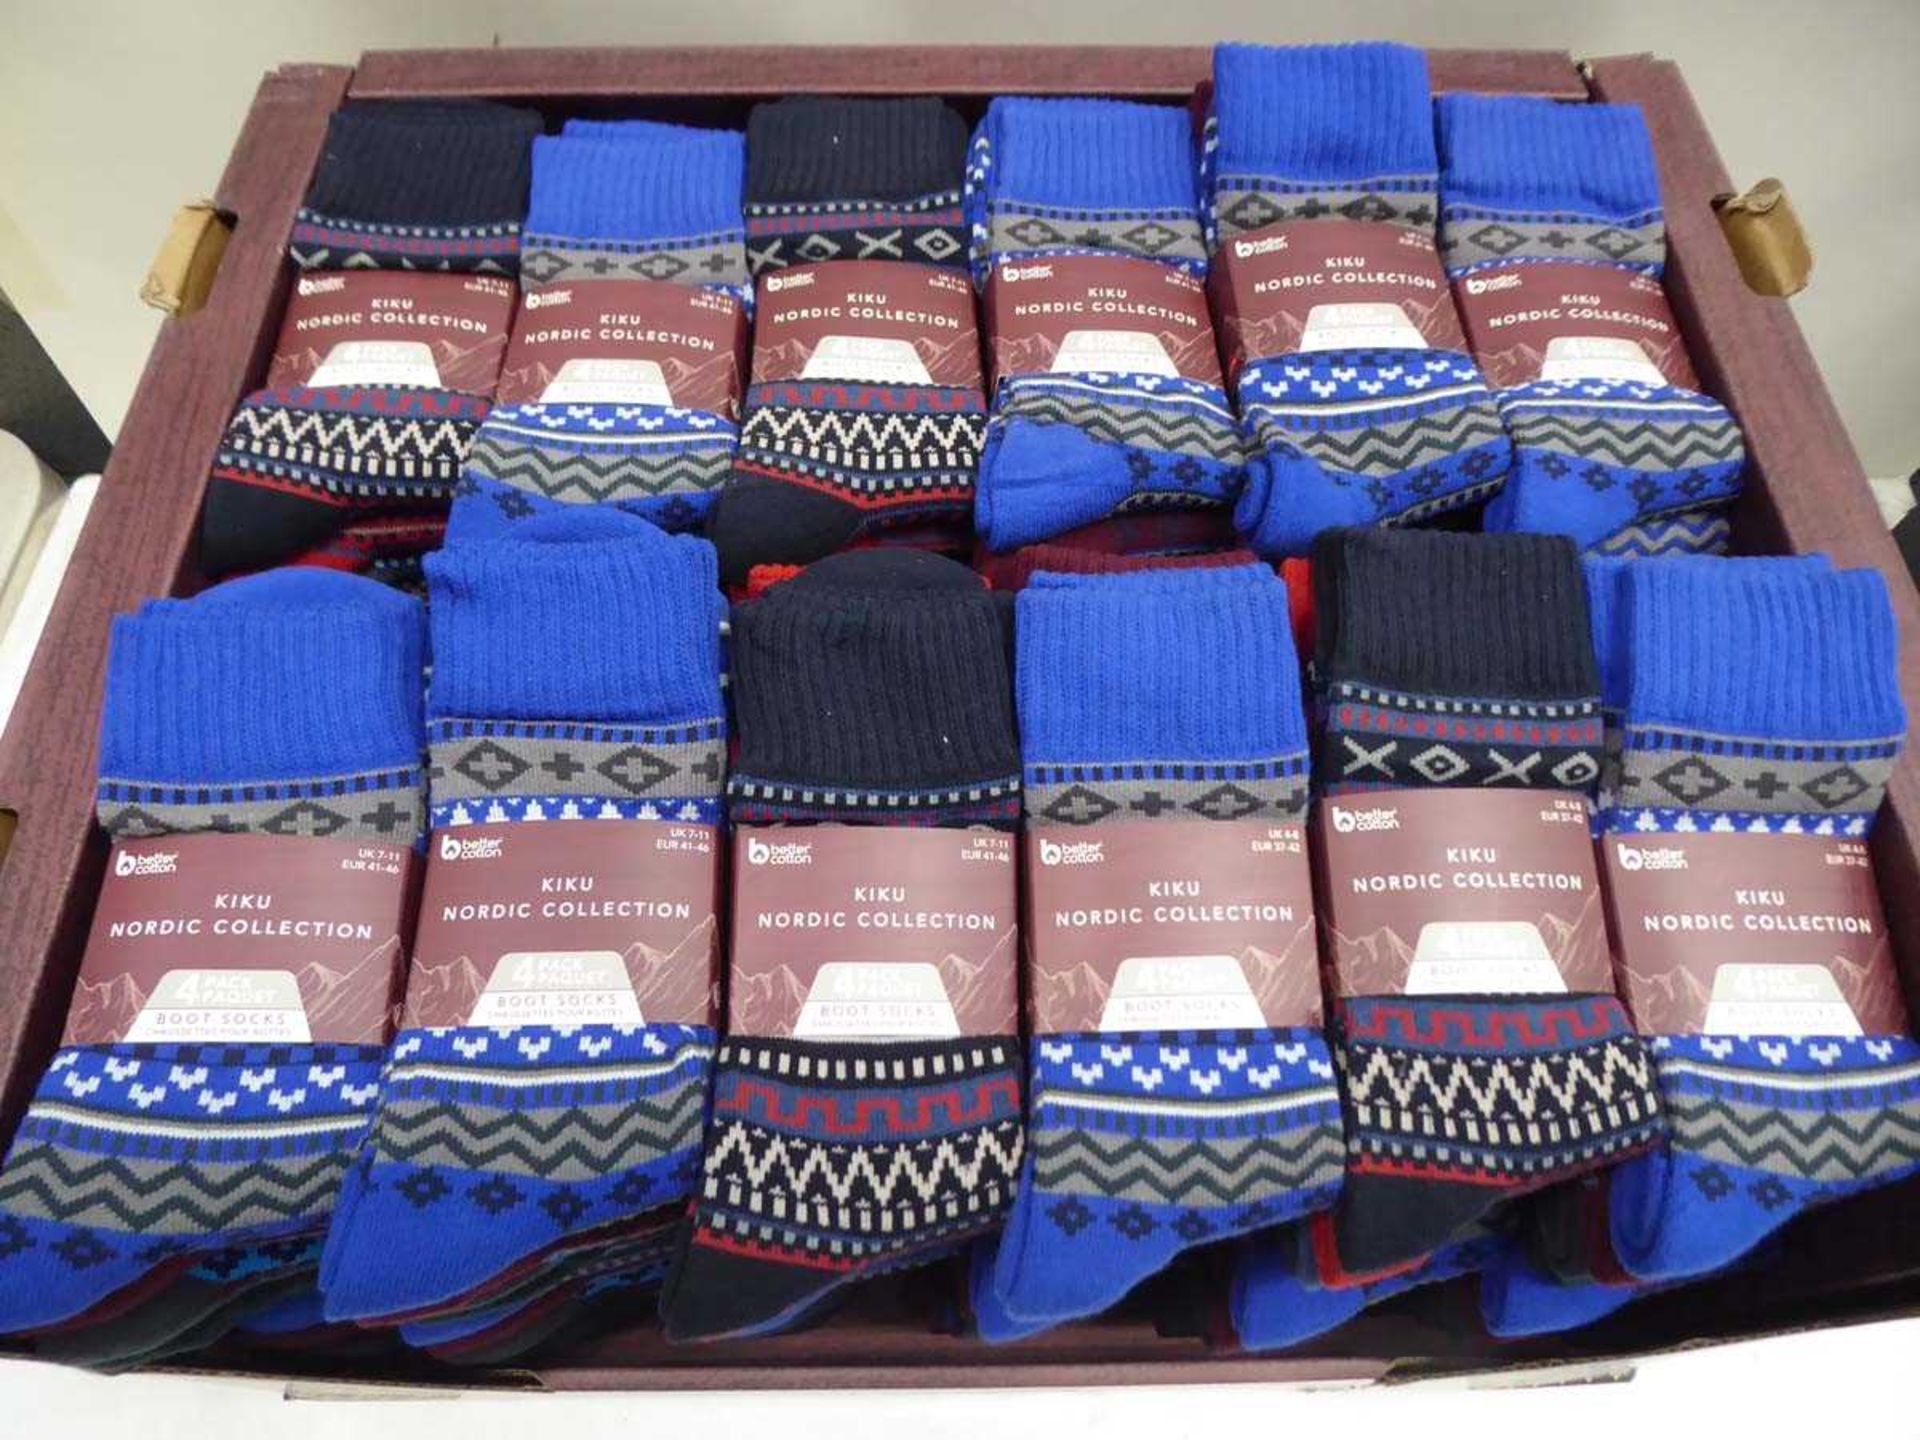 +VAT 36 packs of Kiku Nordic Collection boot socks (4 pairs per pack)